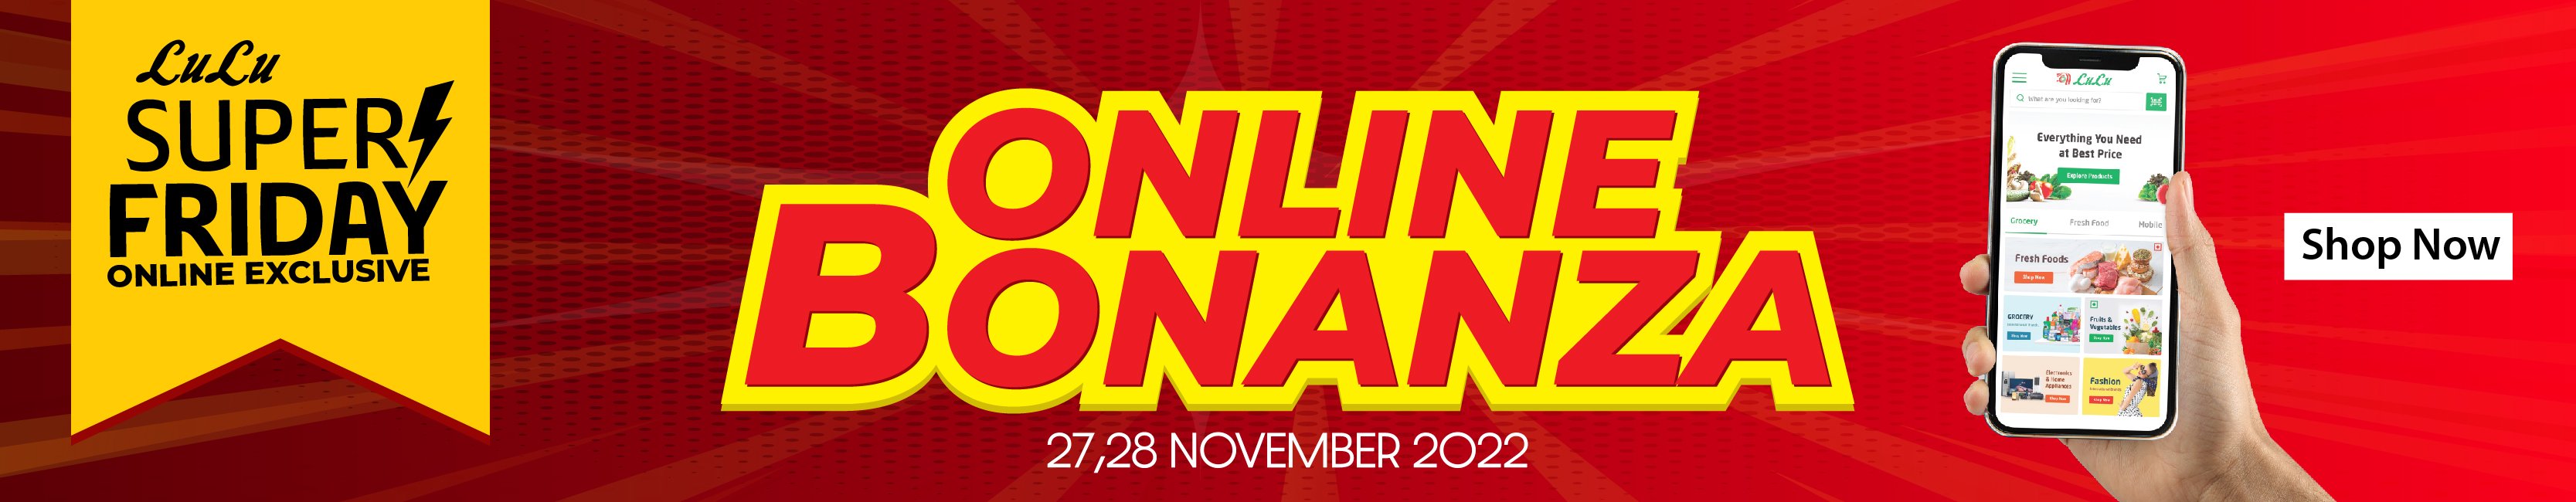 Online Bonanza (2)-01.jpg